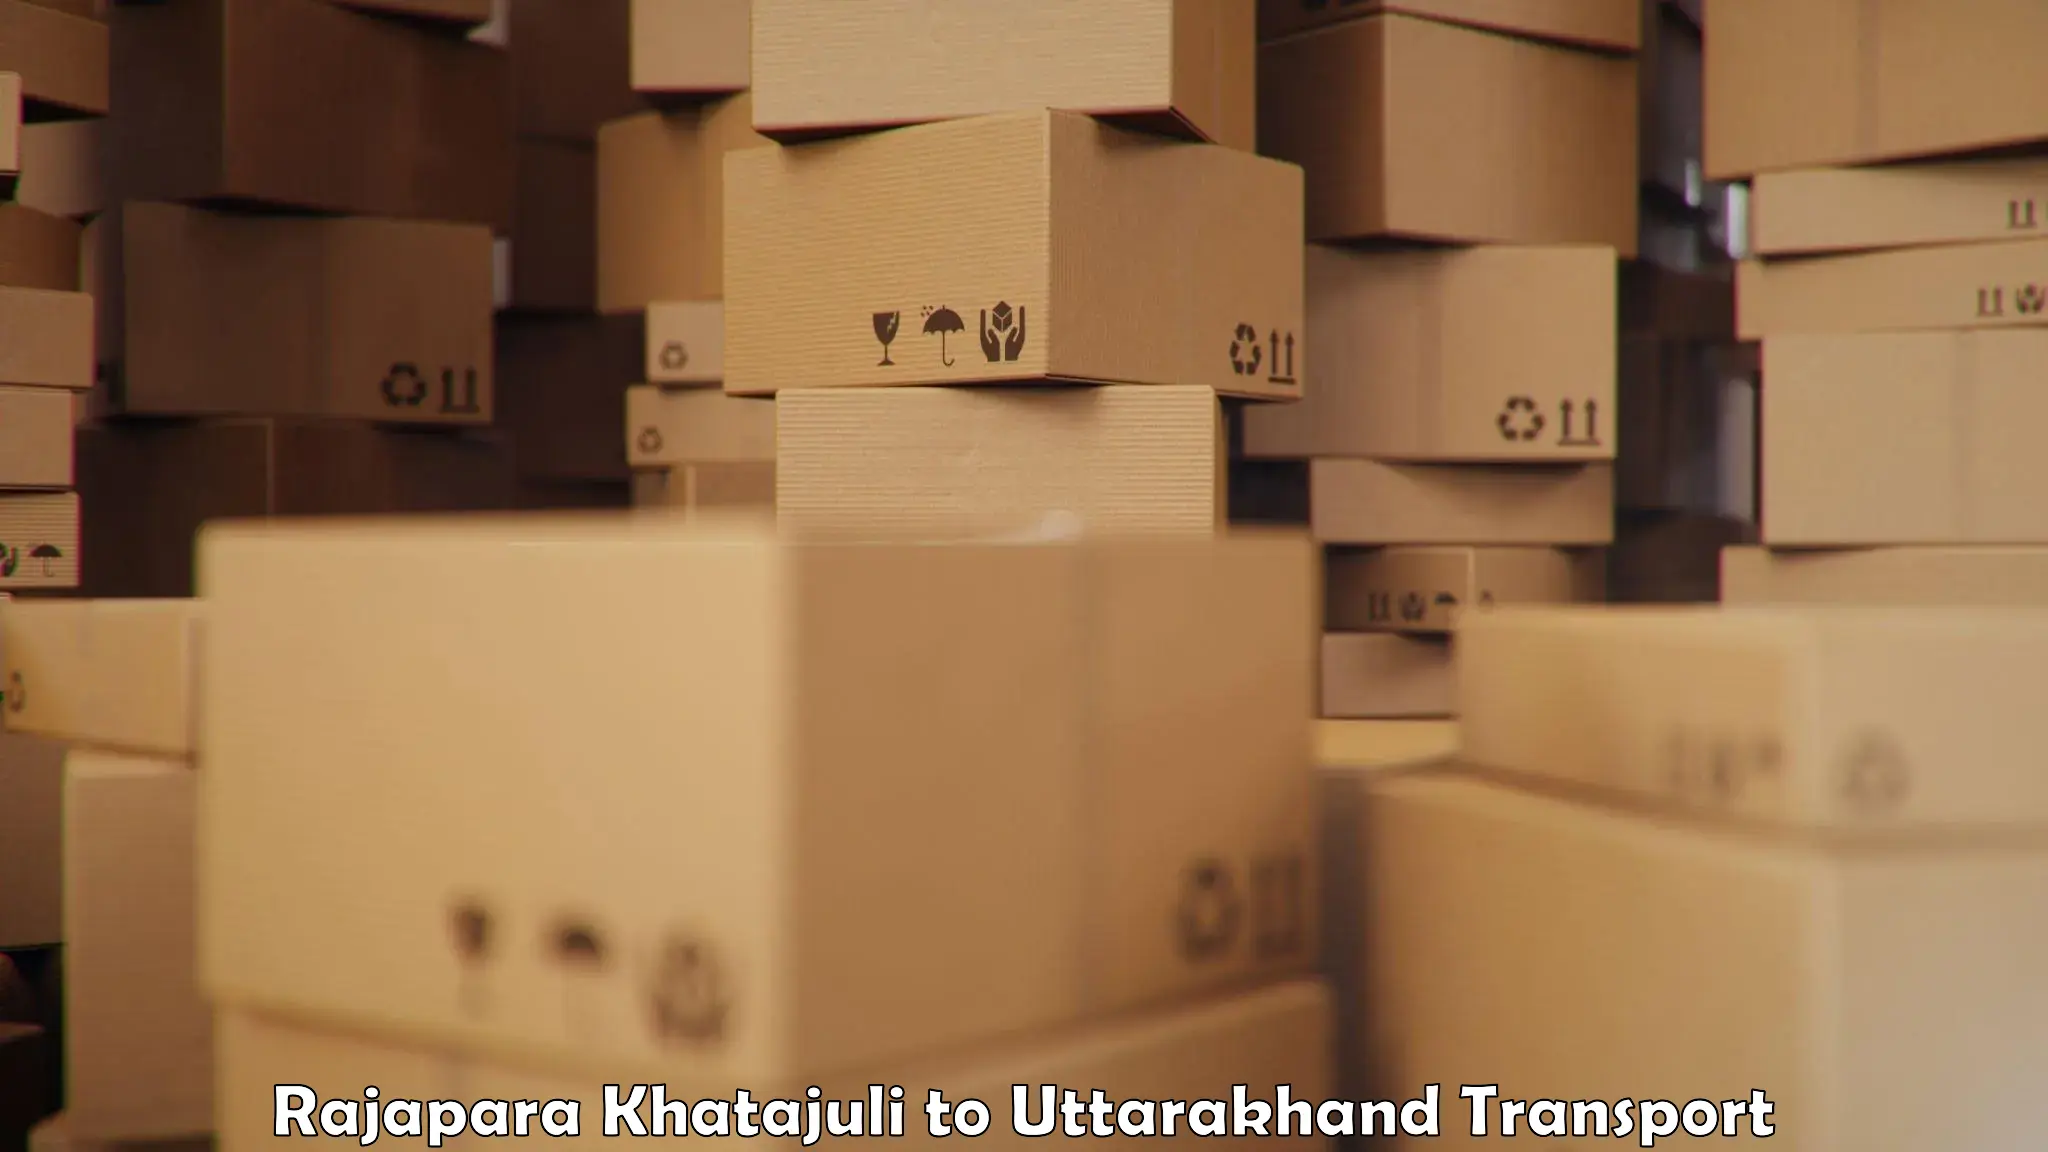 Road transport online services Rajapara Khatajuli to Udham Singh Nagar